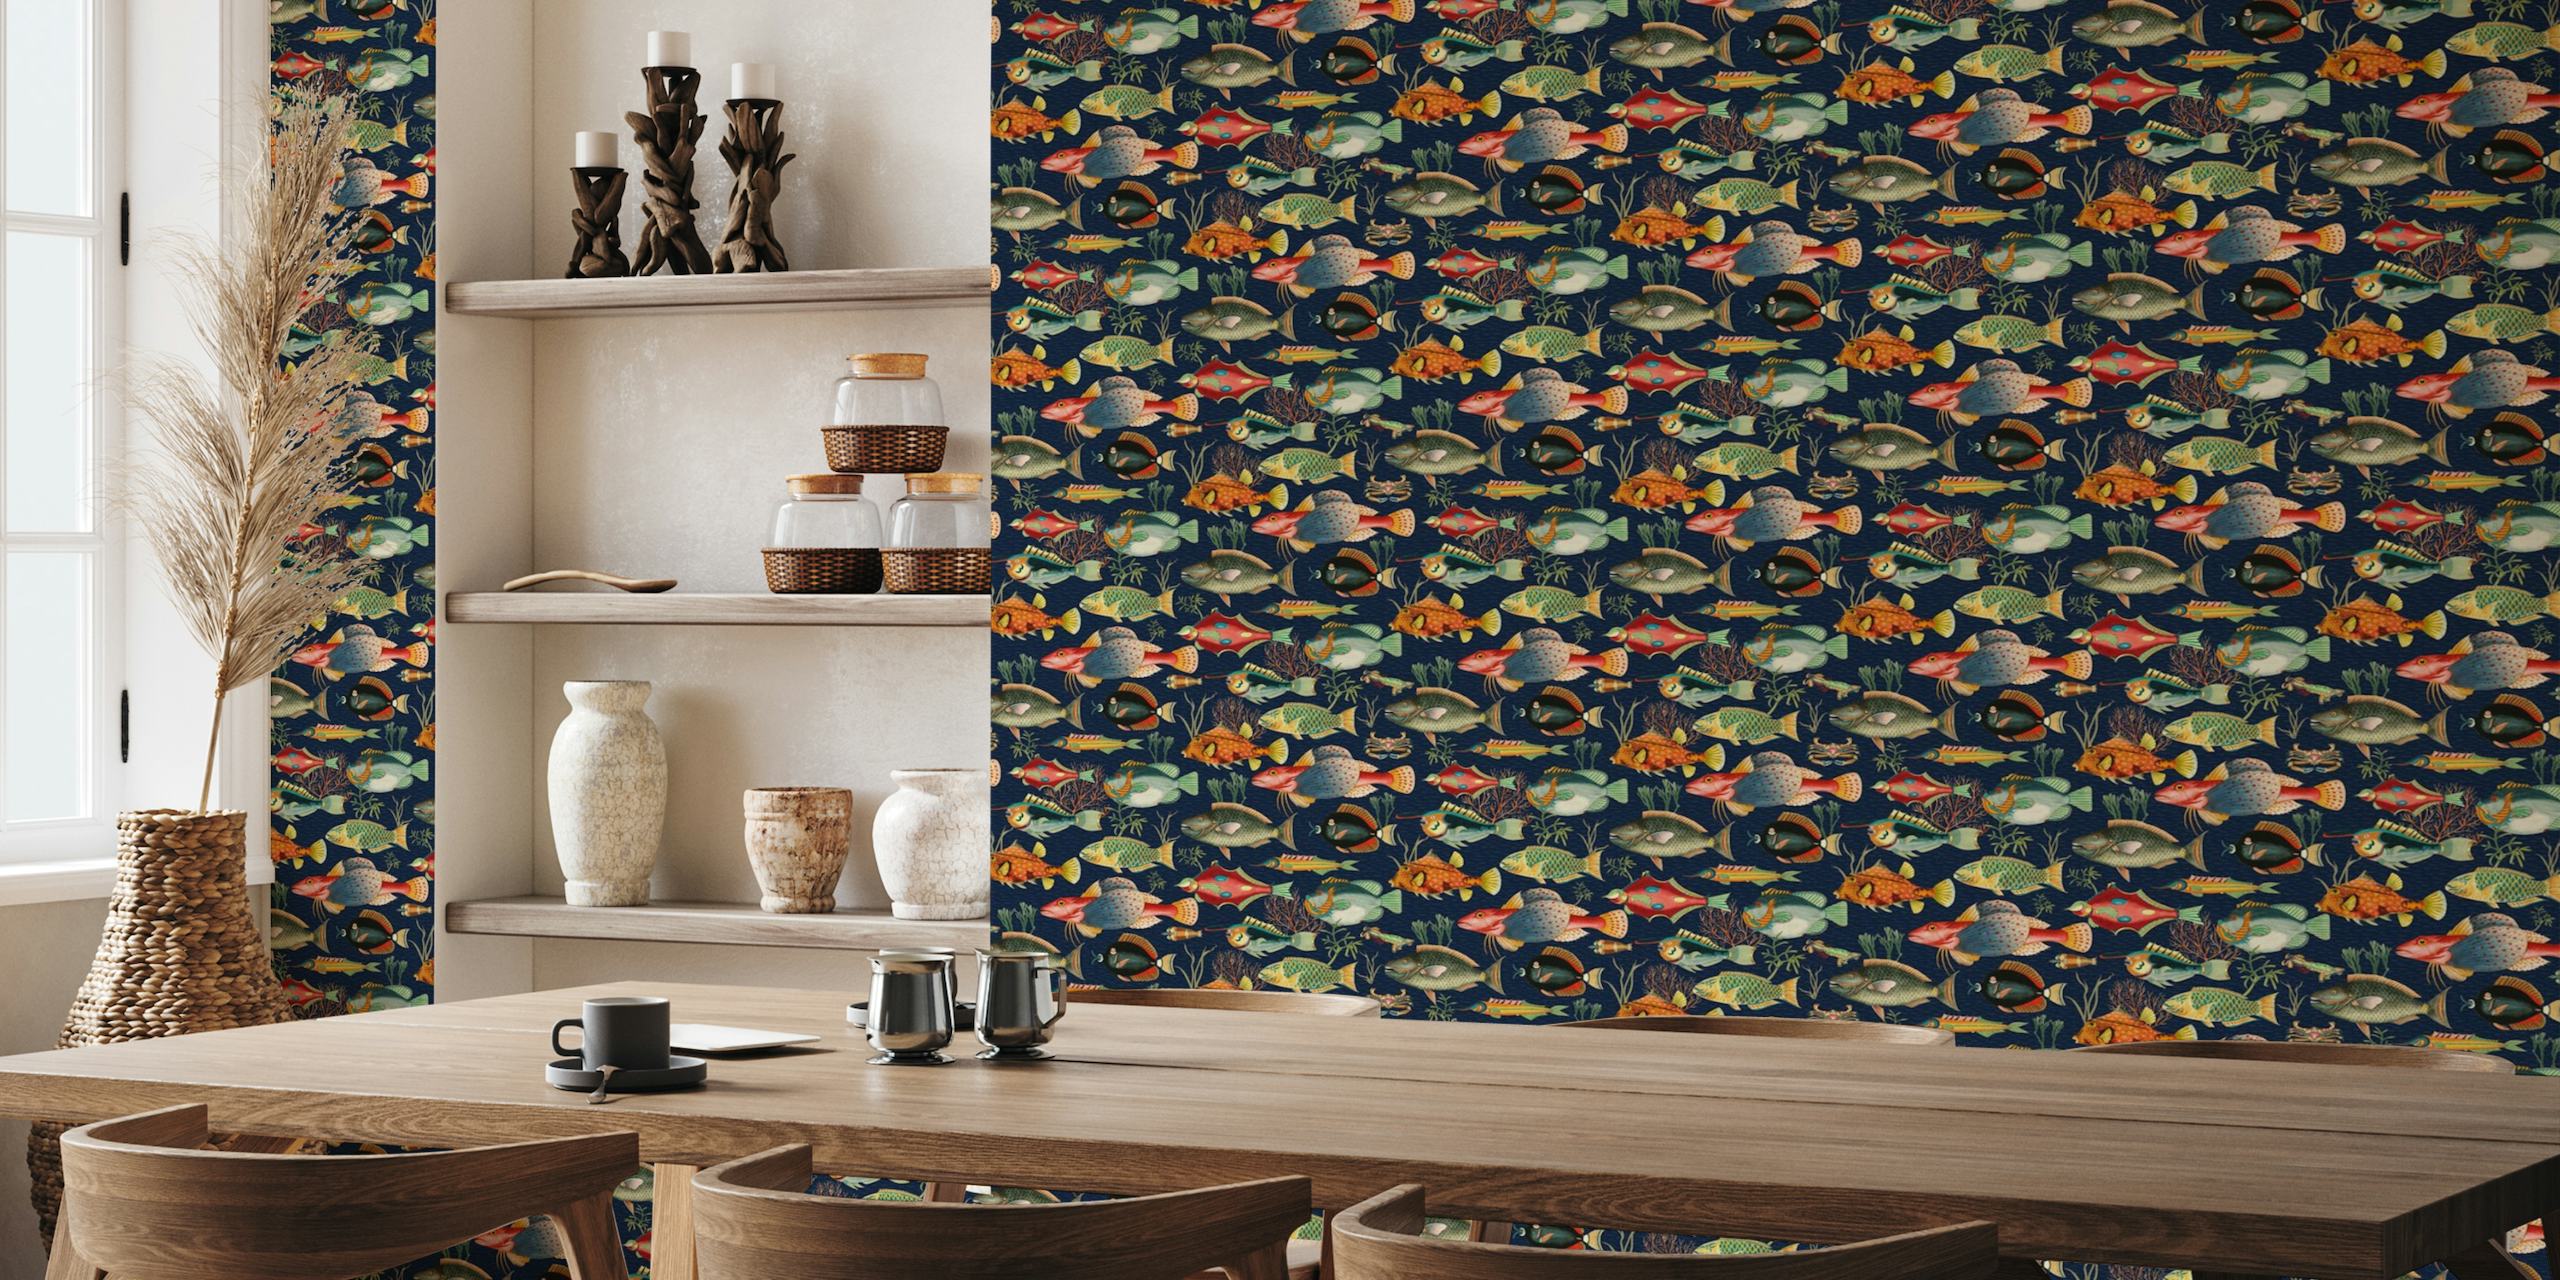 fotomural vinílico de parede com padrão de peixe submarino em esquema de cores marinho escuro